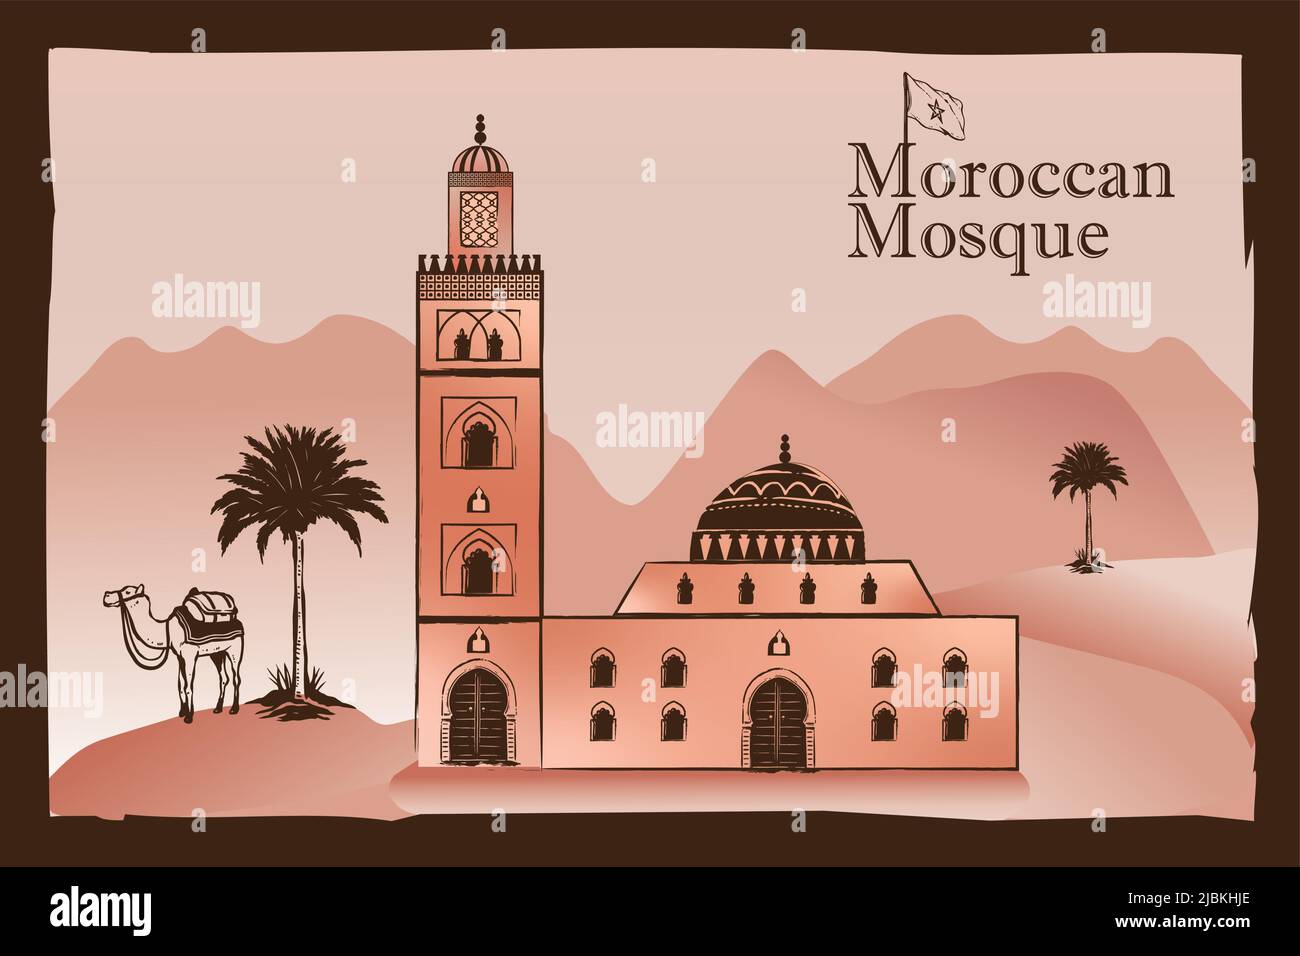 Marokkanische Moschee, Palmen, Kamel, sahara-Dünen. Vektor-Bild. Isolierte touristische Postkarte, Poster, Kalender Vorlage oder Malbuch Seite Stock Vektor